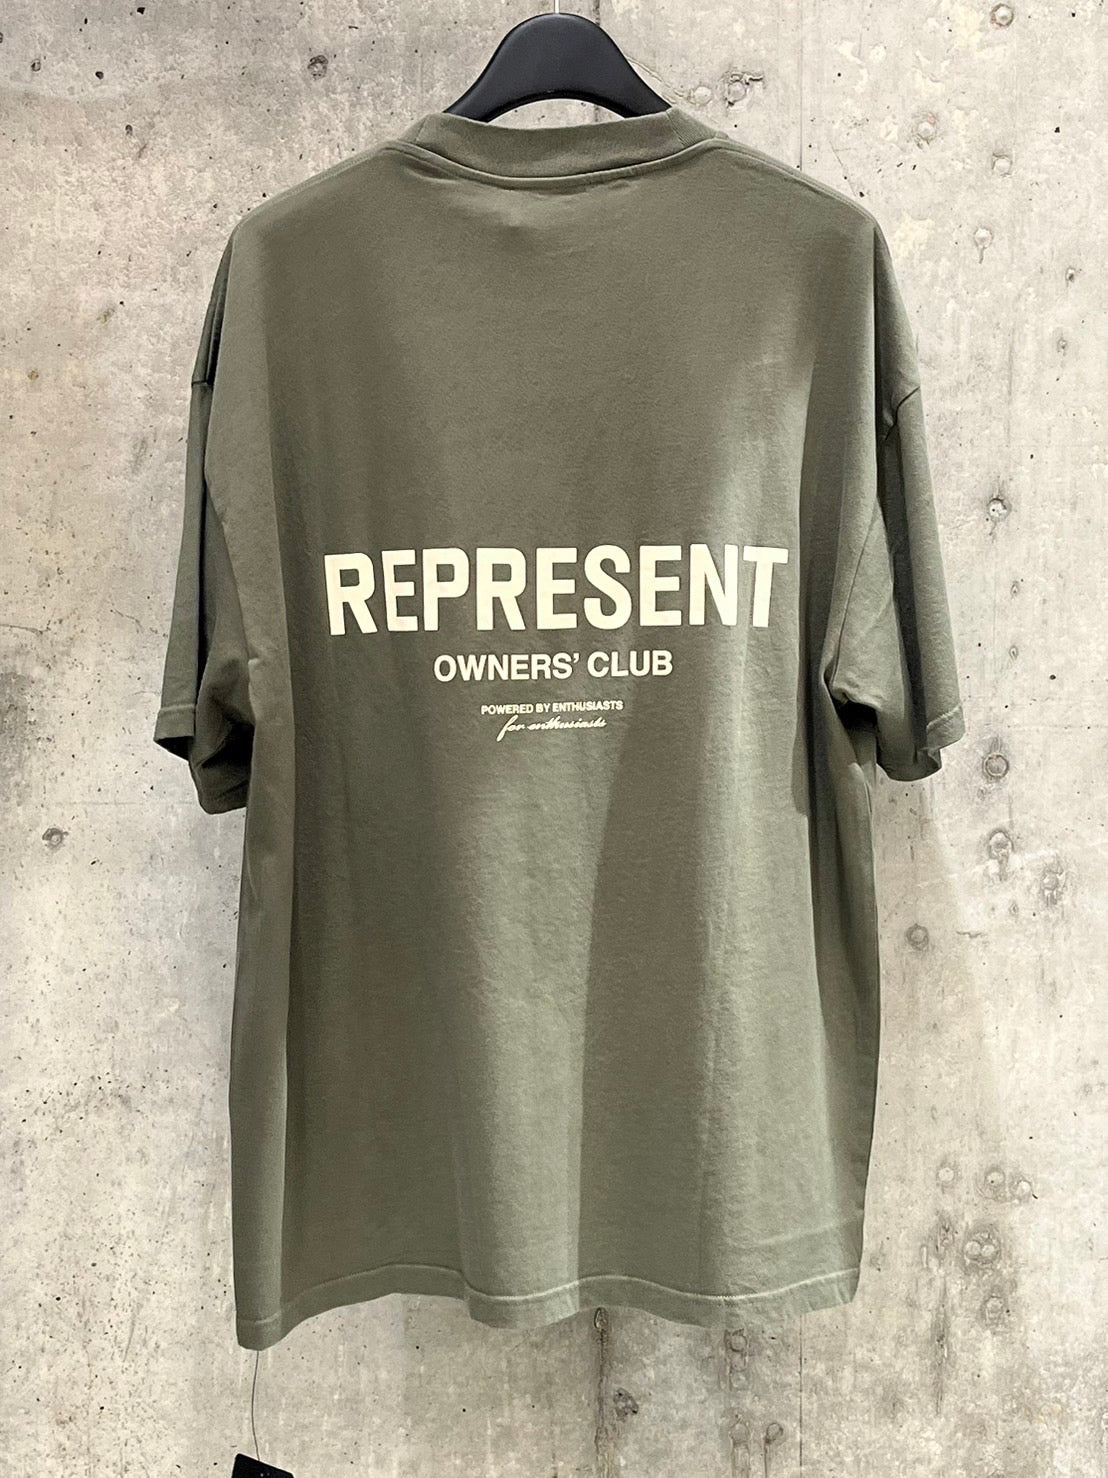 REPRESENT/リプレゼント Tシャツ <MT400707> オリーブ(緑)